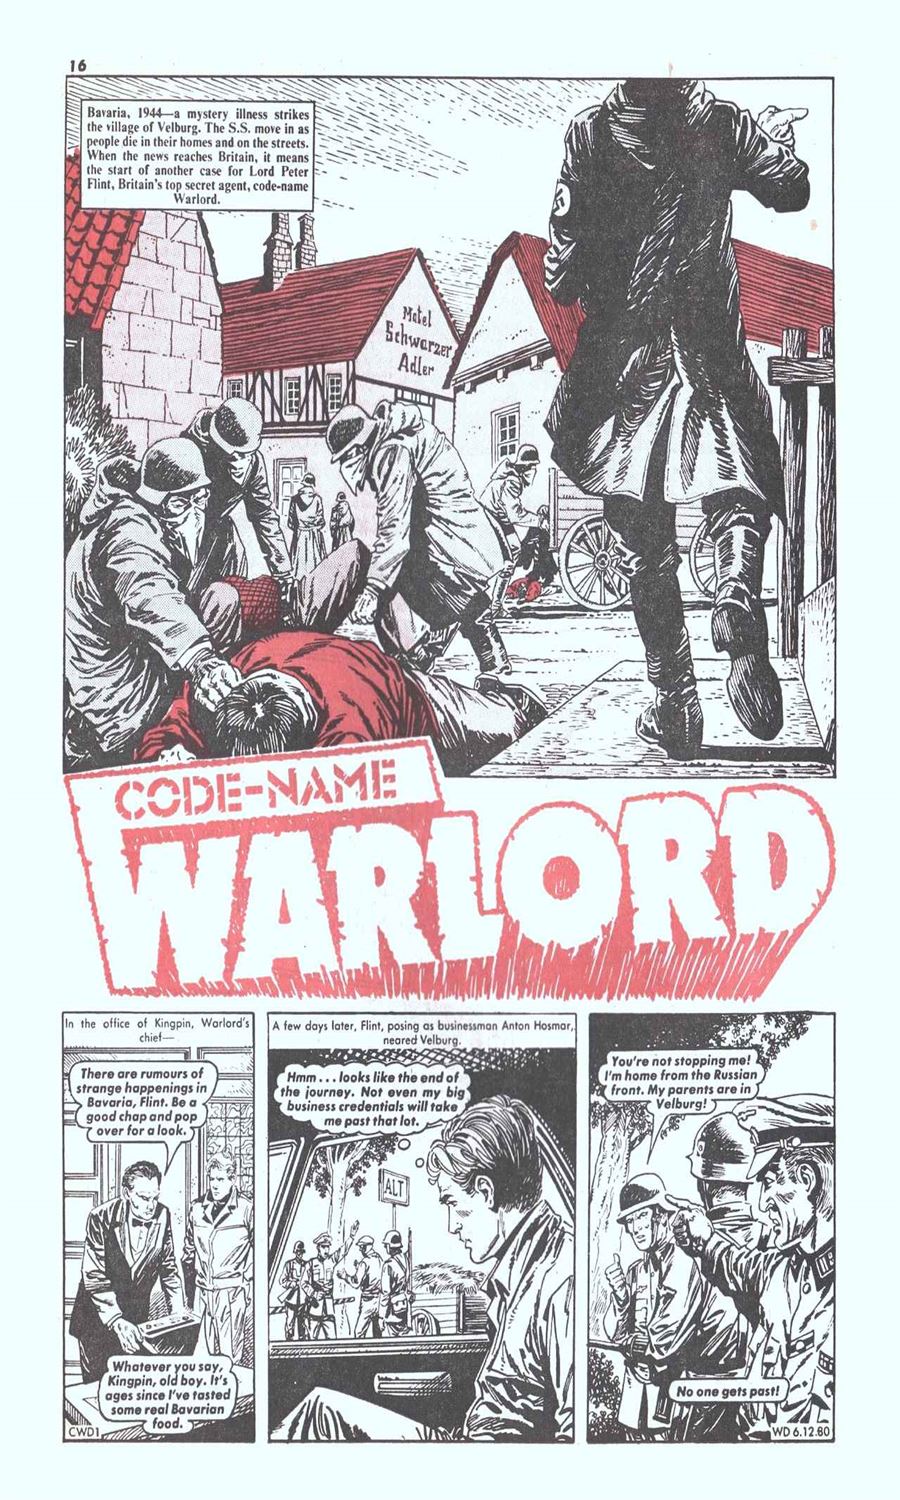 warlord_cb_324_01.jpg